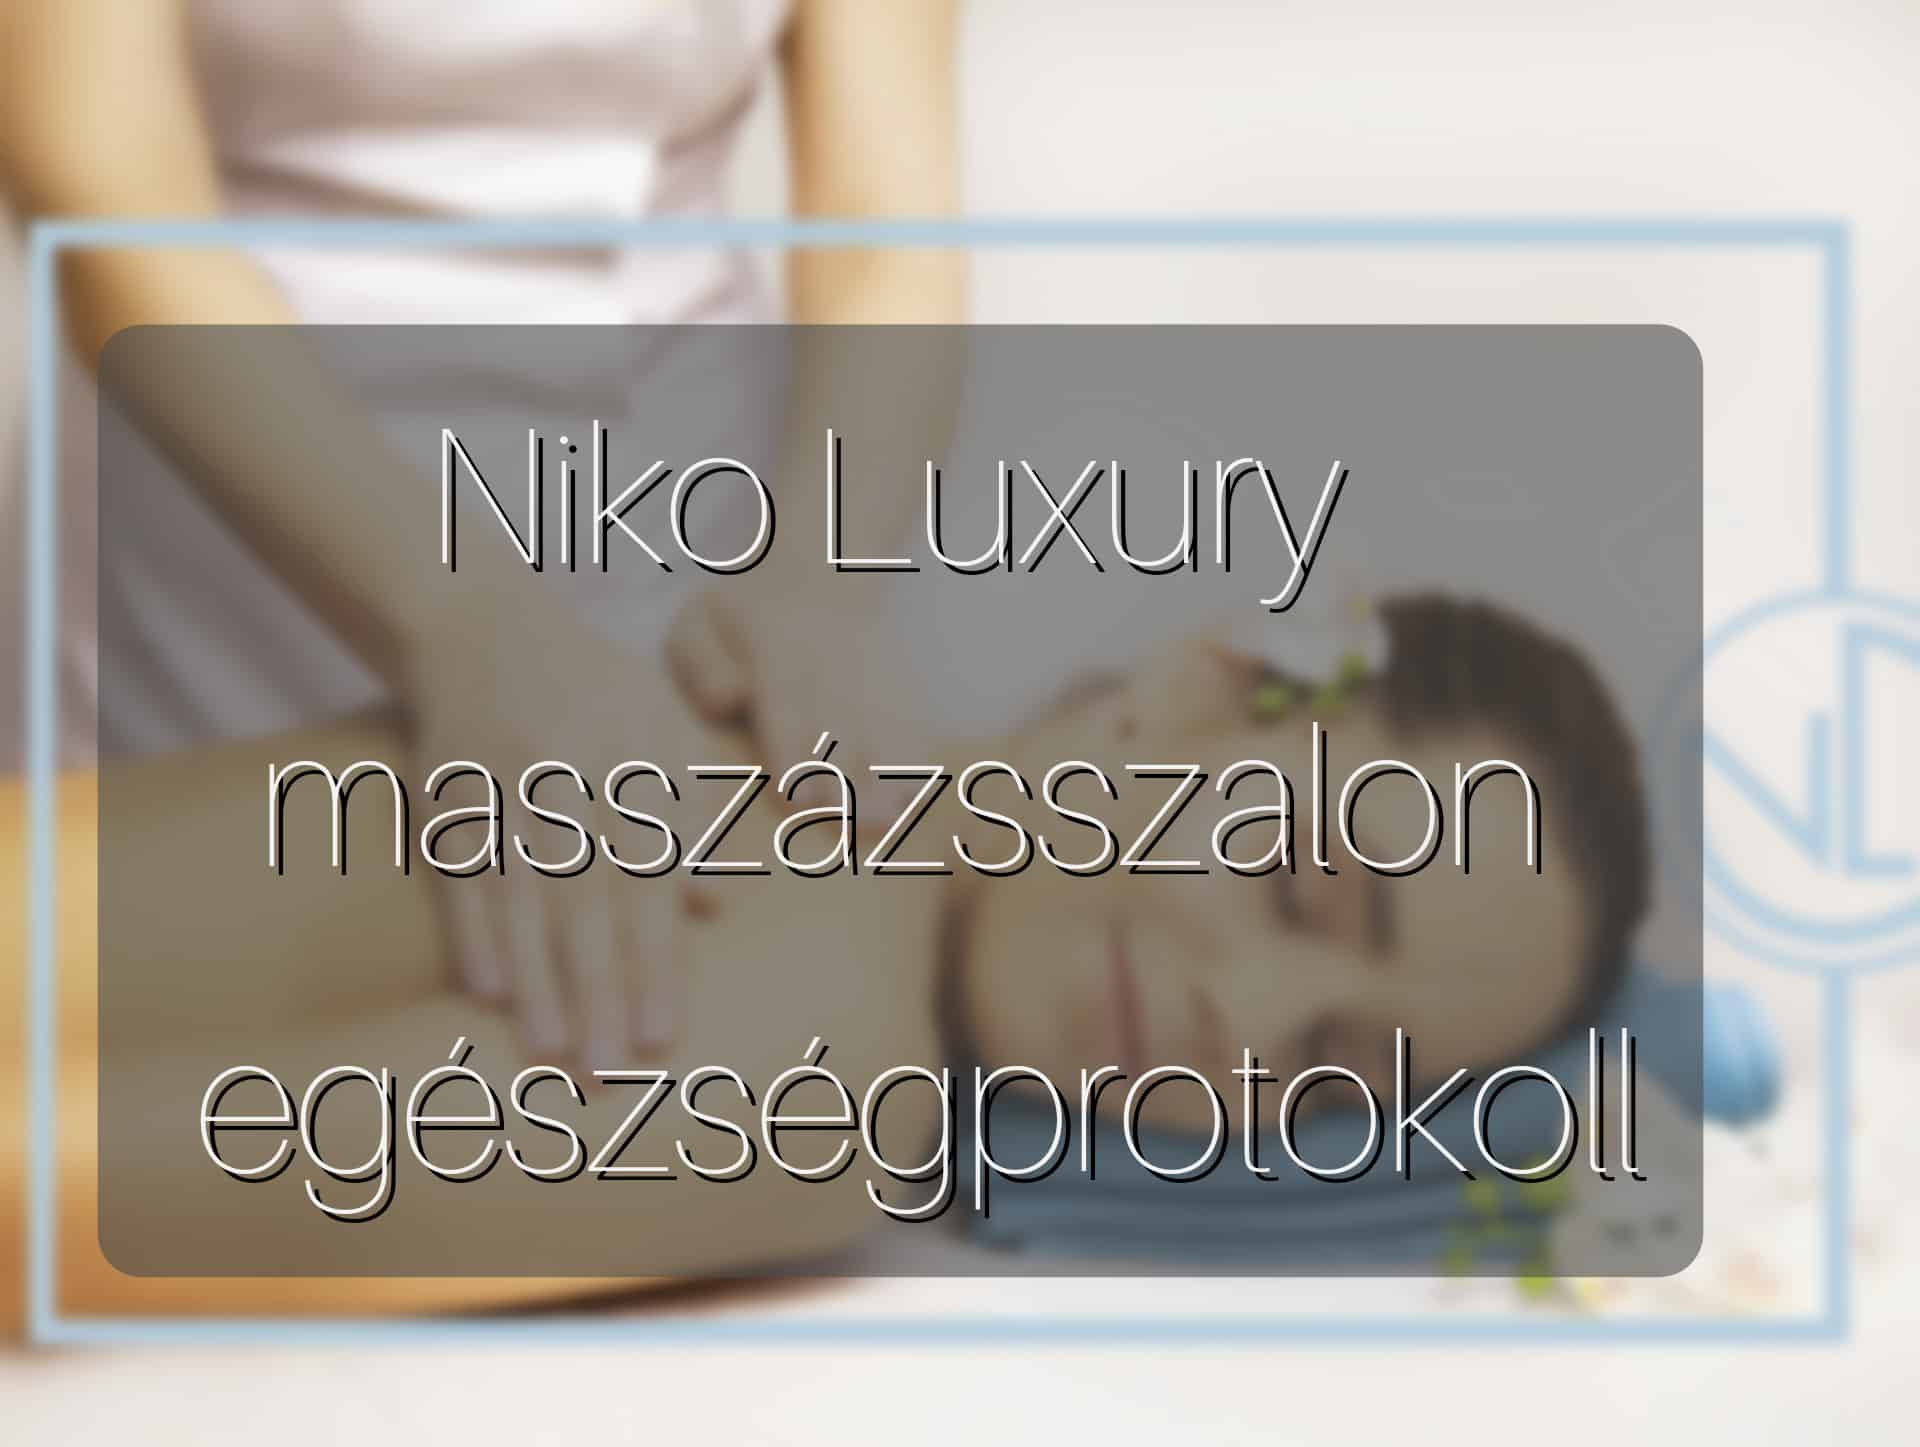 Niko Luxury masszázsszalon egészségprotokoll